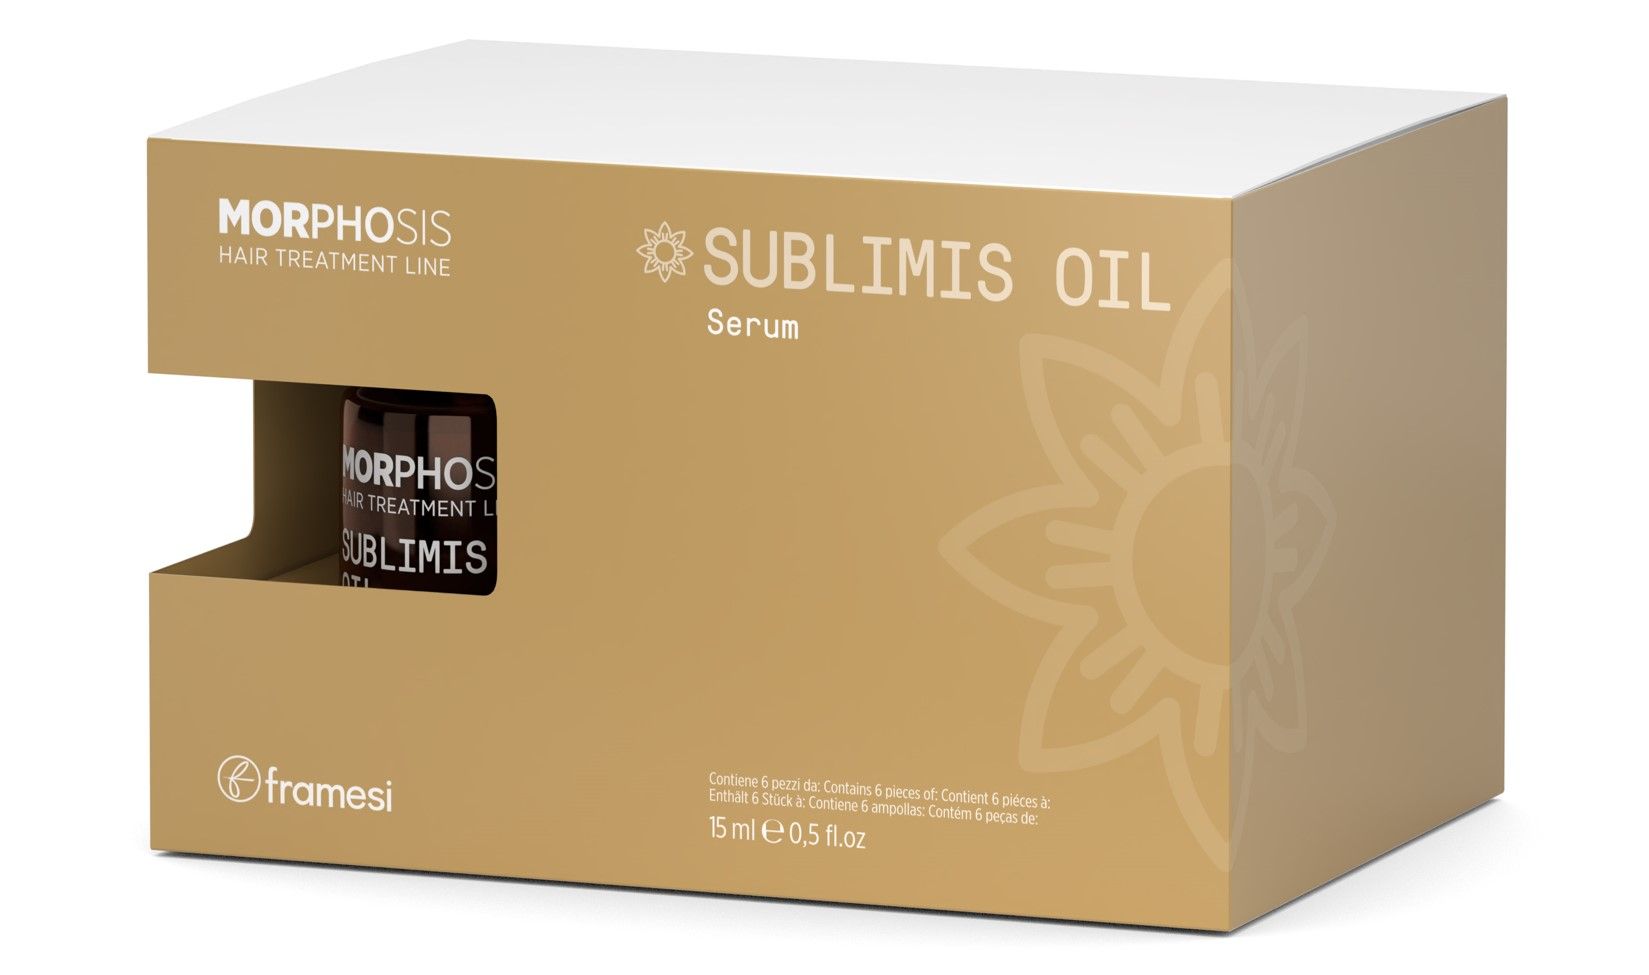 Сыворотка Framesi Sublimis Oil Serum на основе арганового масла 6x15 мл